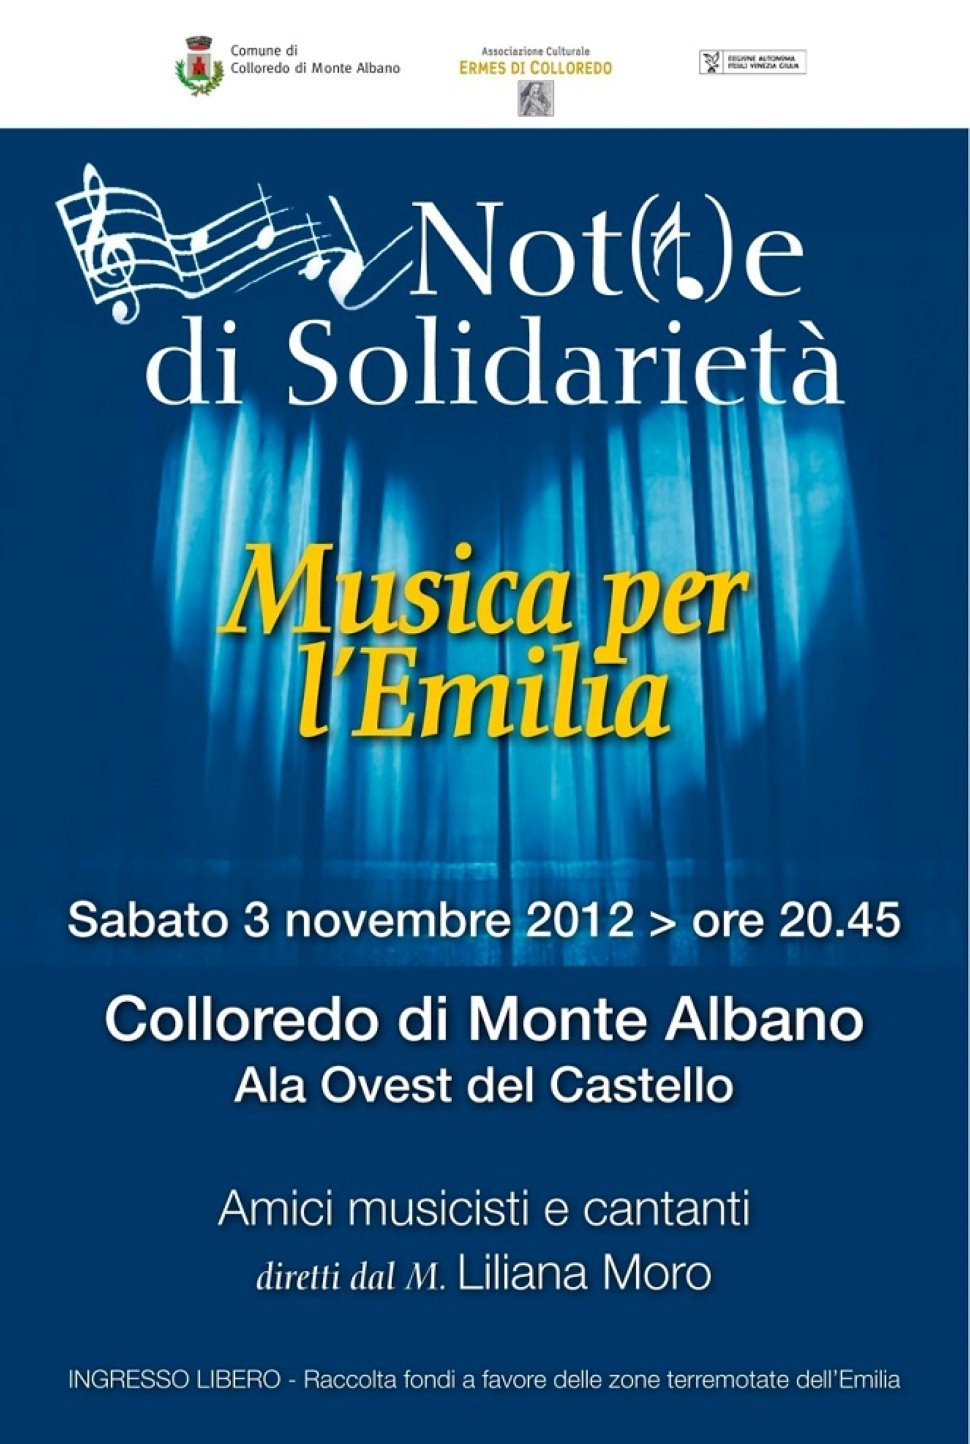 Note&solidarietà con “Musica per l’Emilia” a Colloredo di Monte Albano